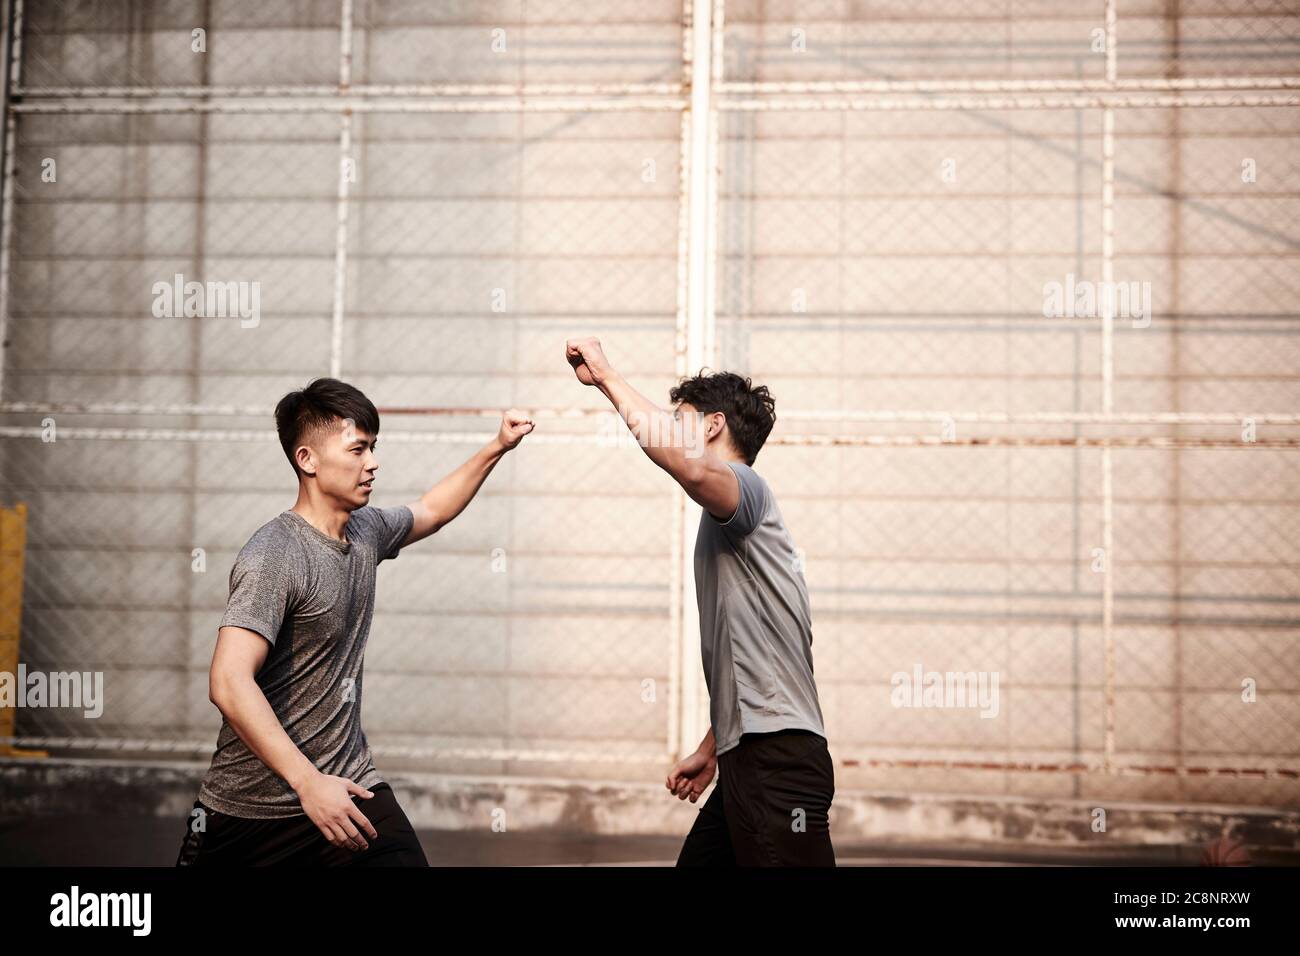 deux jeunes athlètes asiatiques agitent des poings célébrant le succès Banque D'Images